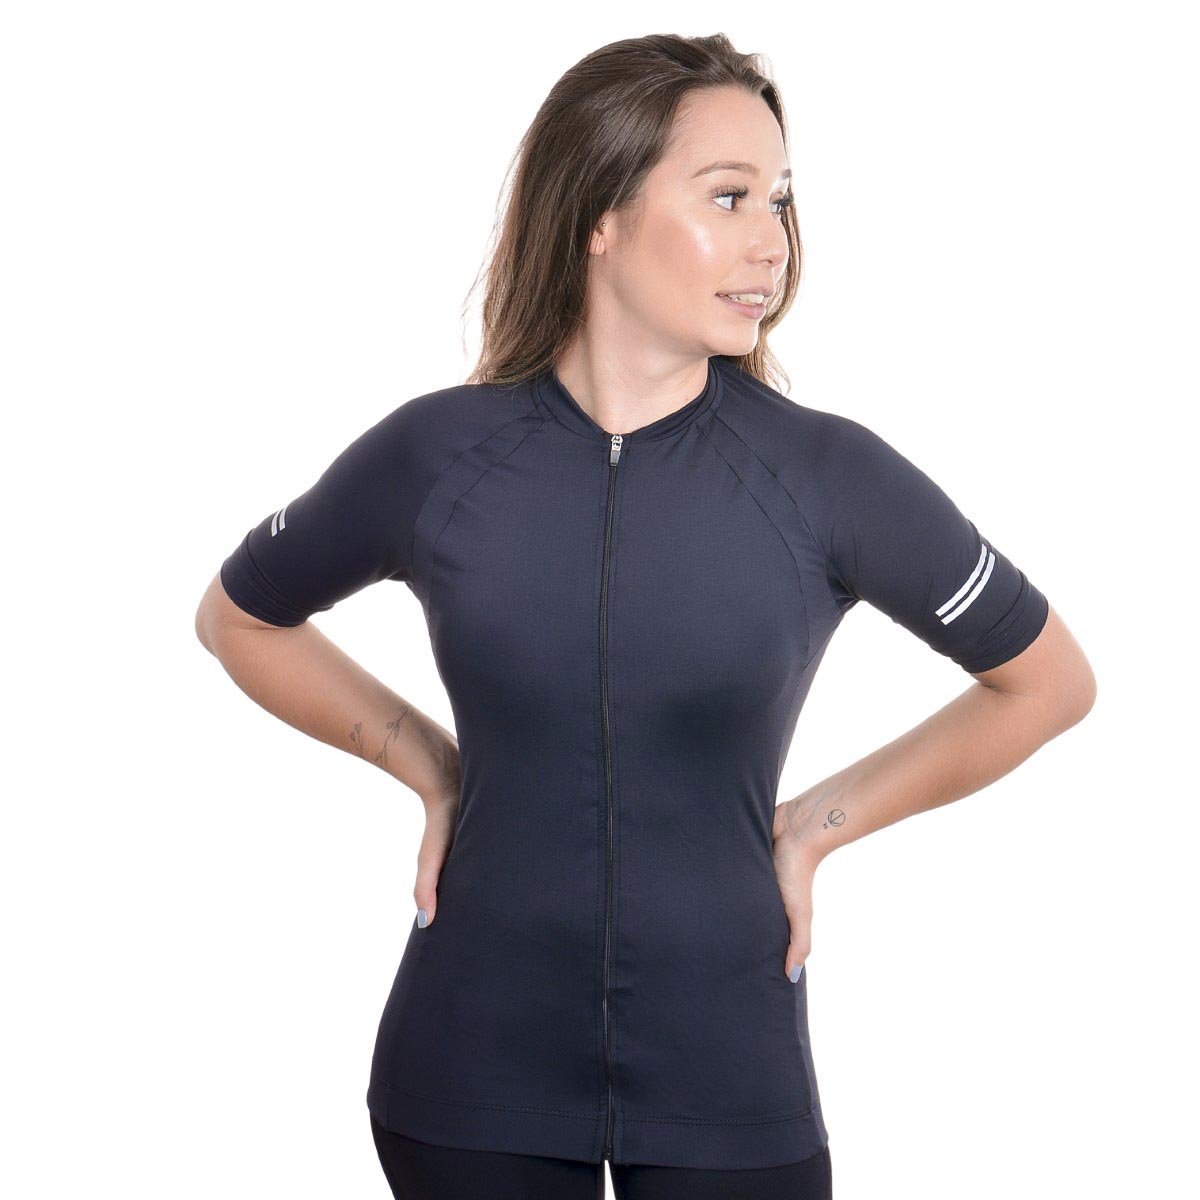 Camiseta feminina ciclismo com zíper Lupo Preto 1